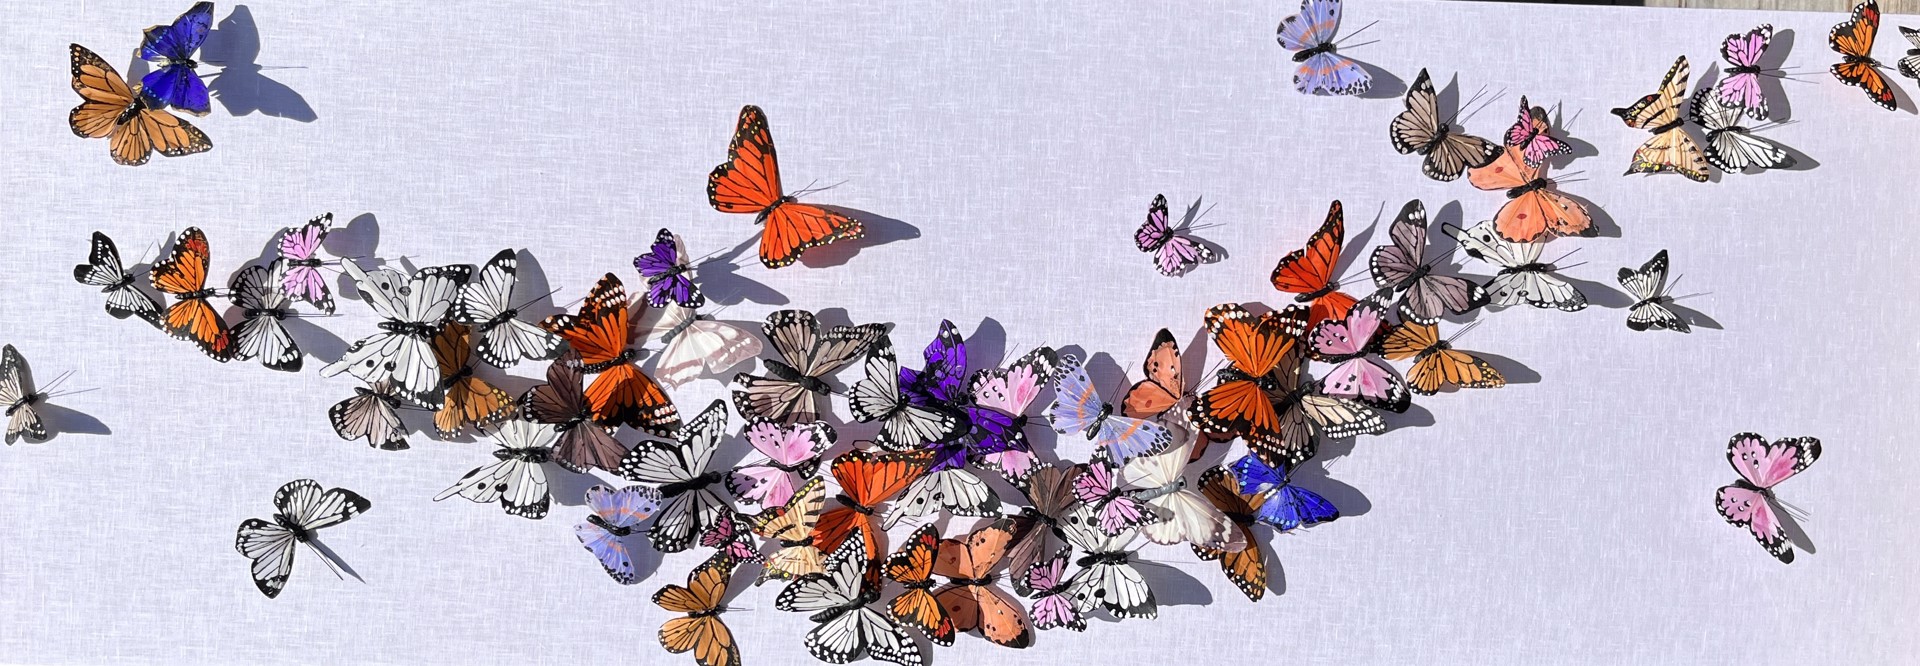 Summer Flutter by Juan Carlos Collada